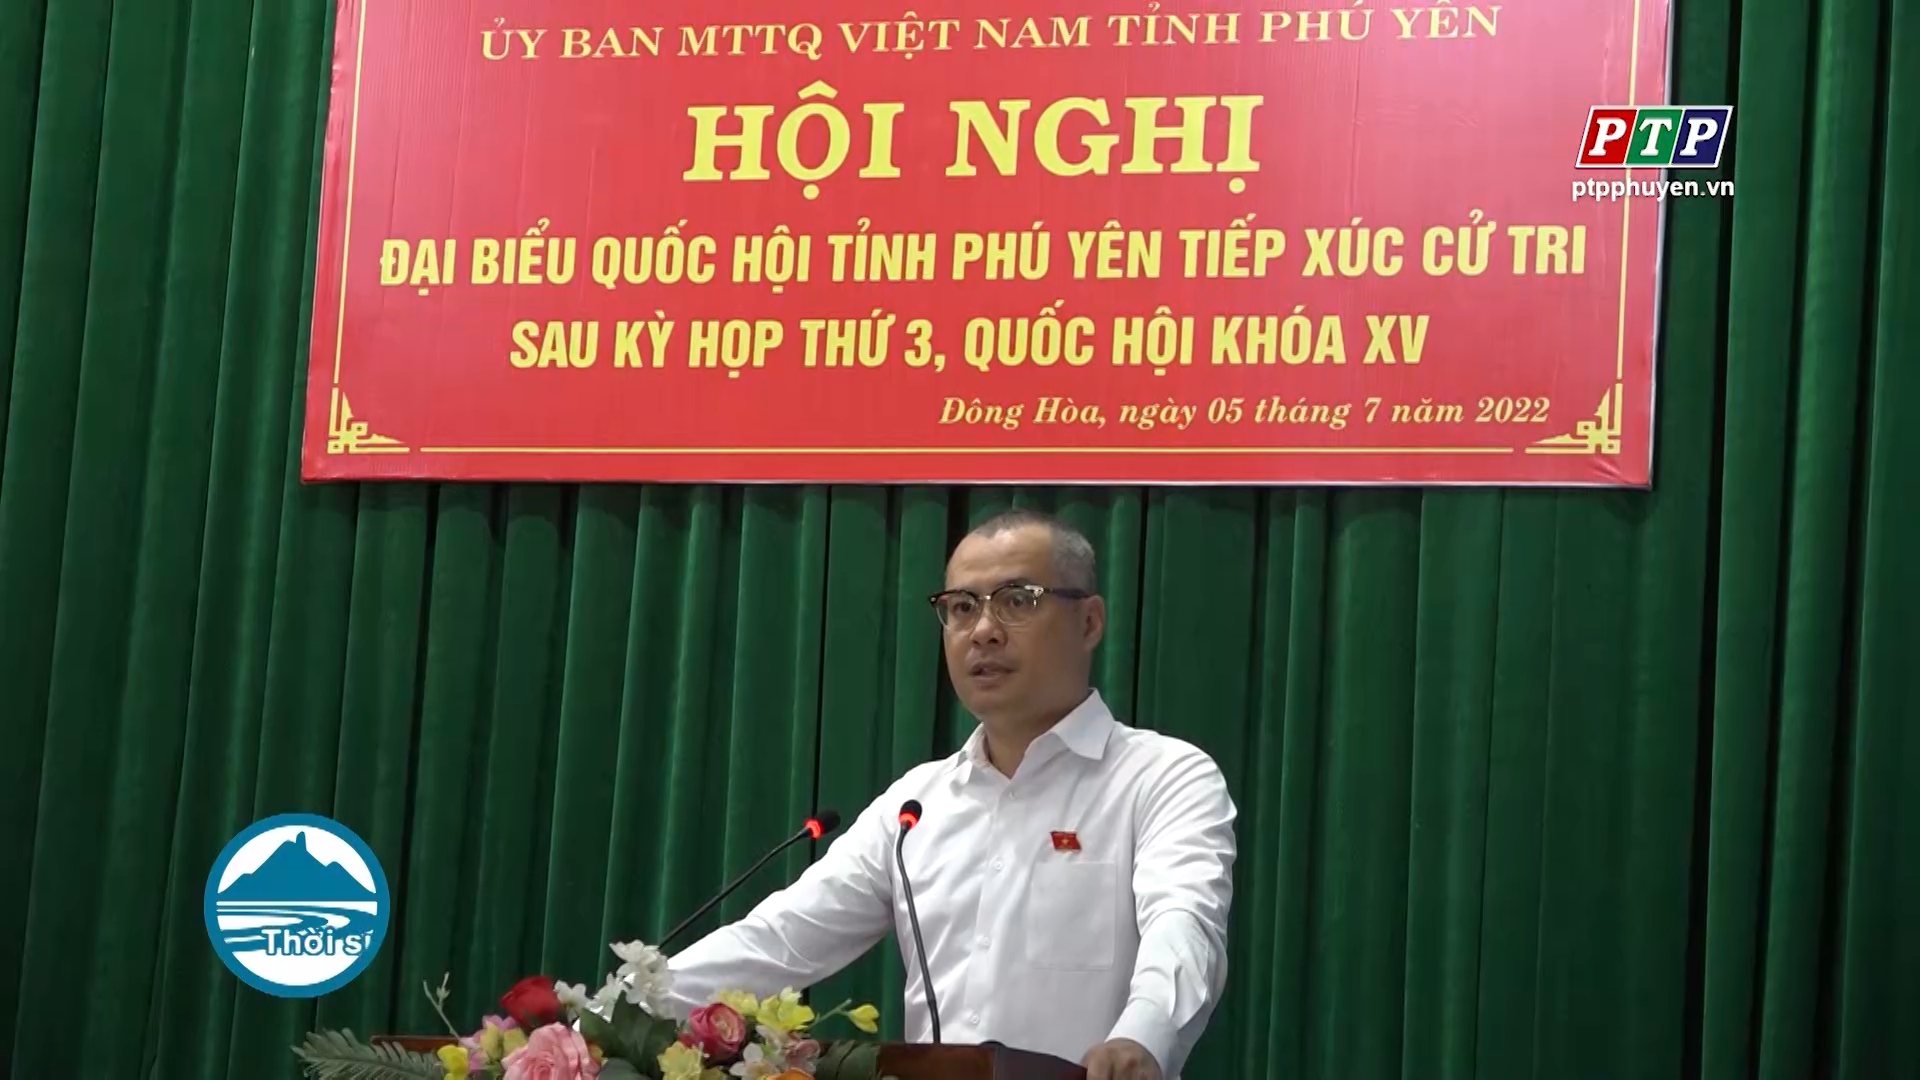 ĐBQH tỉnh Phú Yên tiếp xúc cử tri TX Đông Hòa sau kỳ họp thứ 3, Quốc hội khóa XV